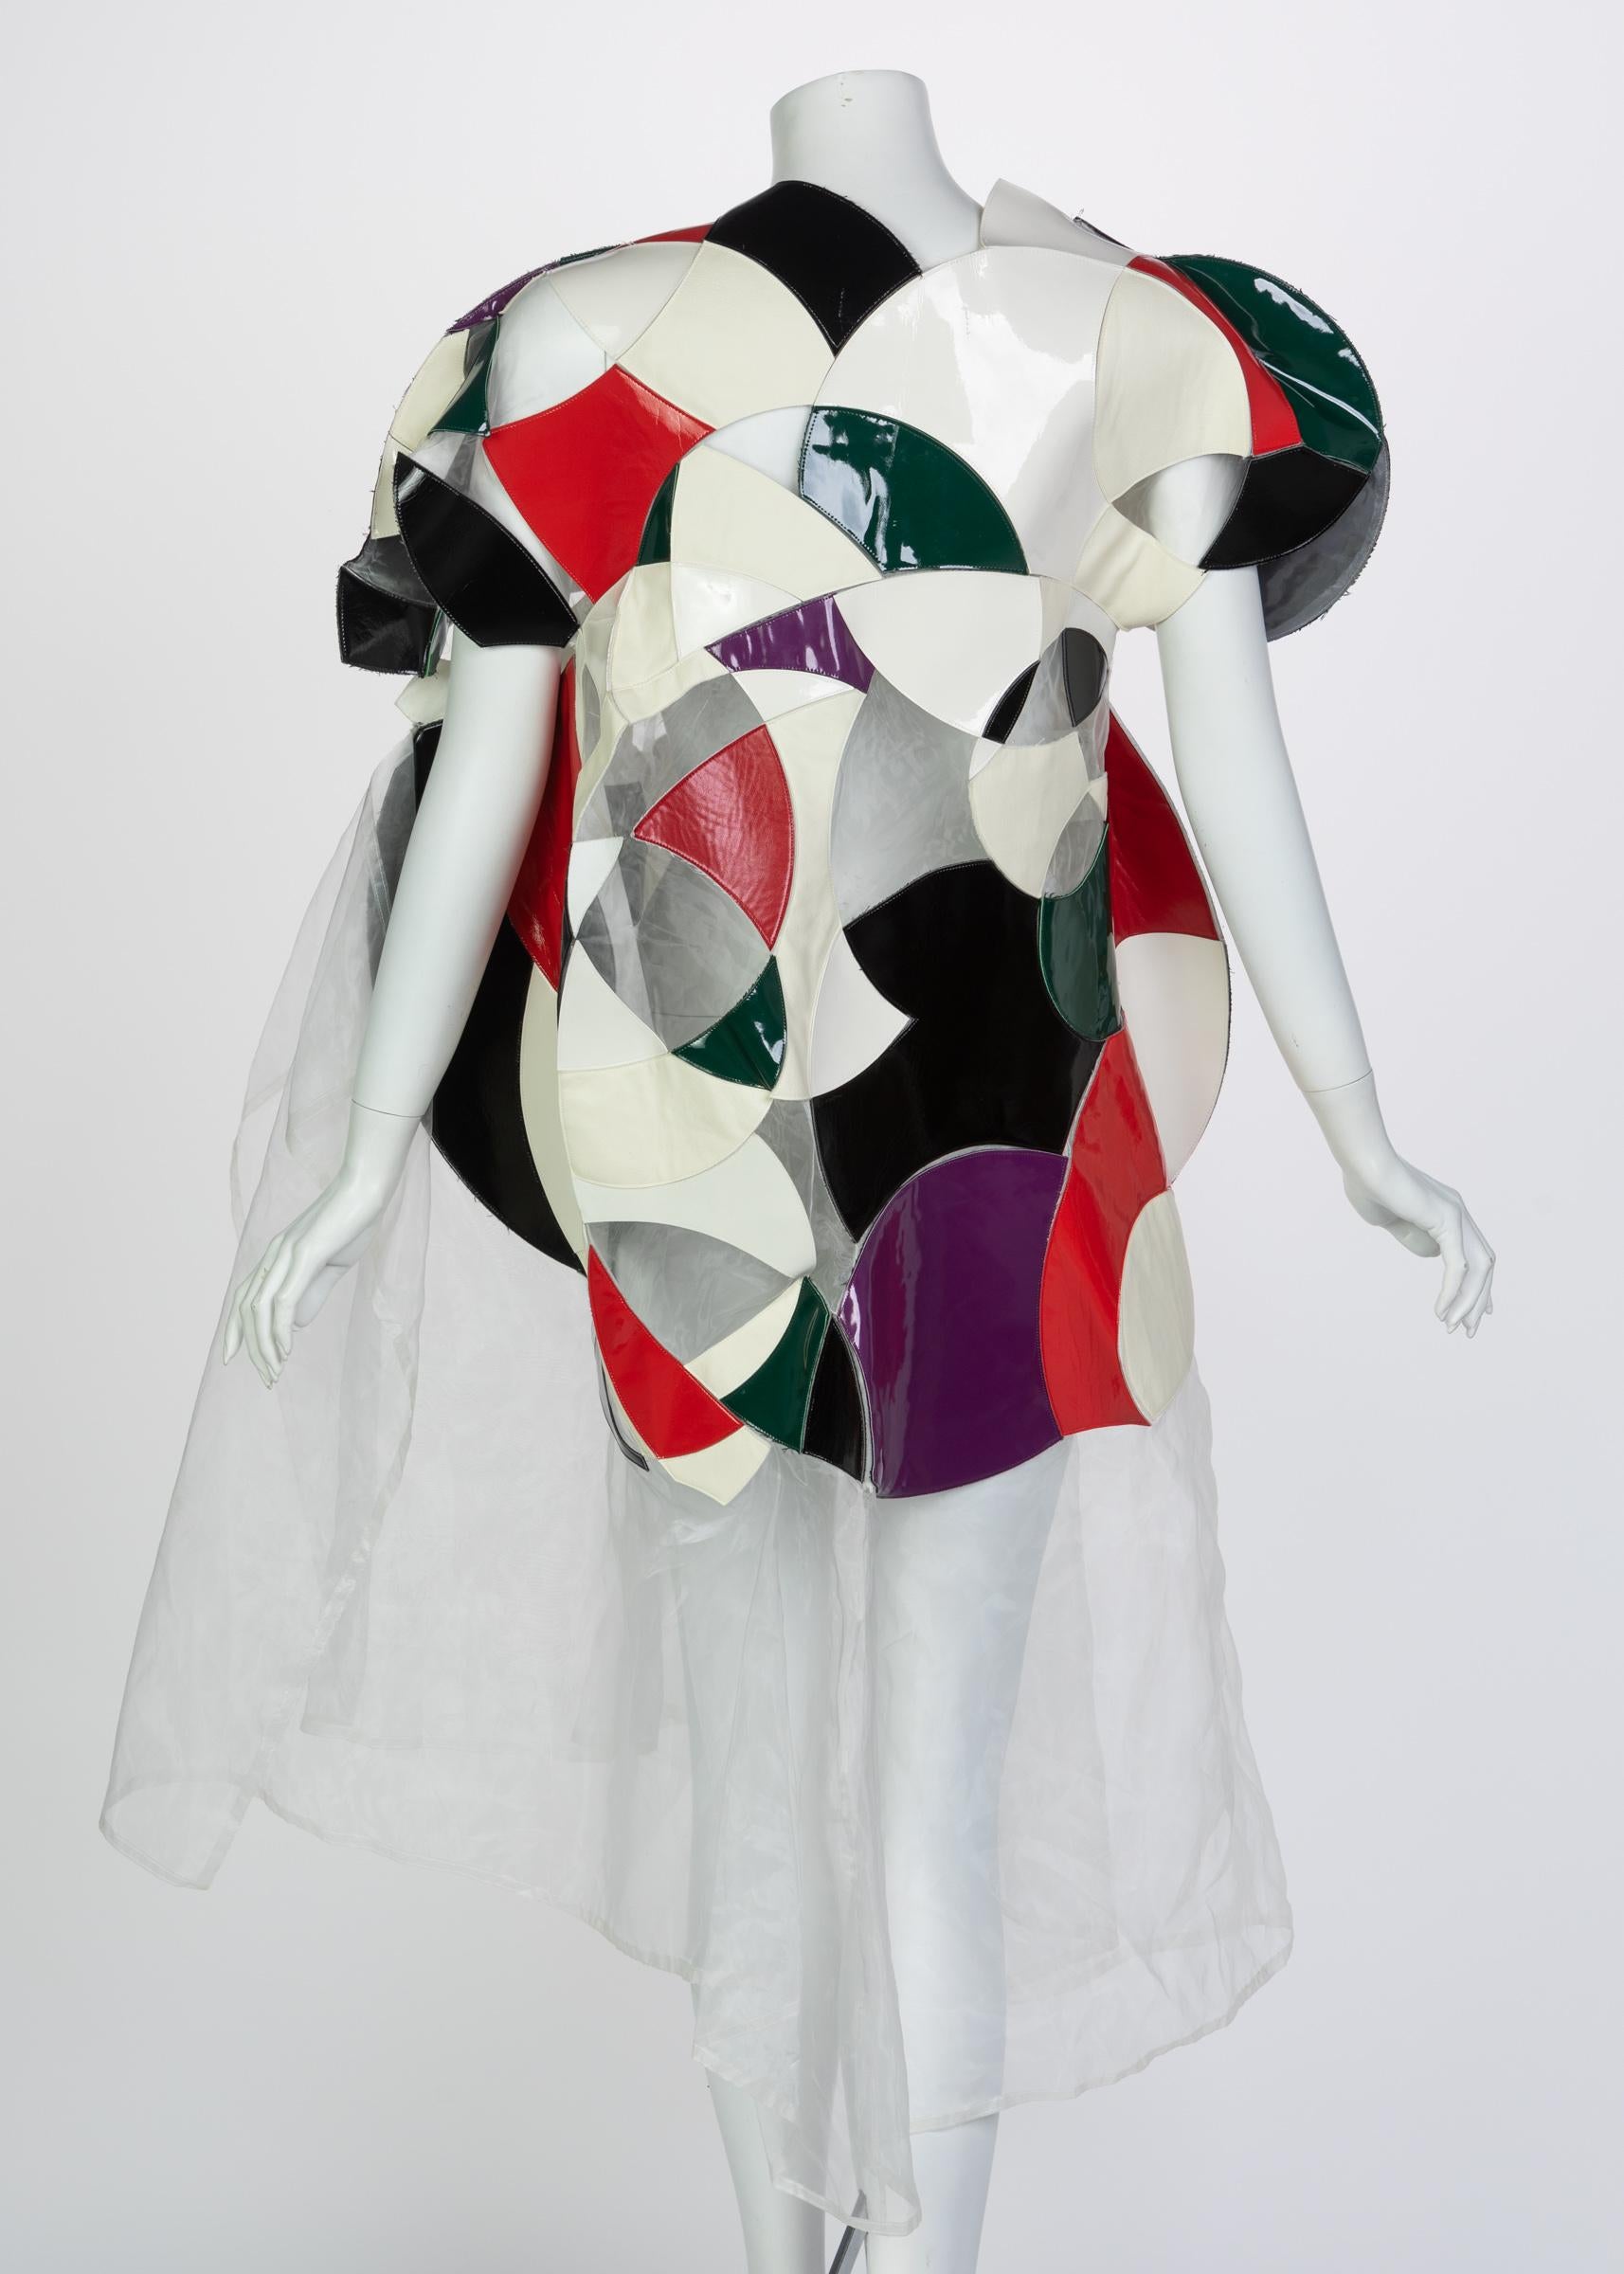 cubism dresses